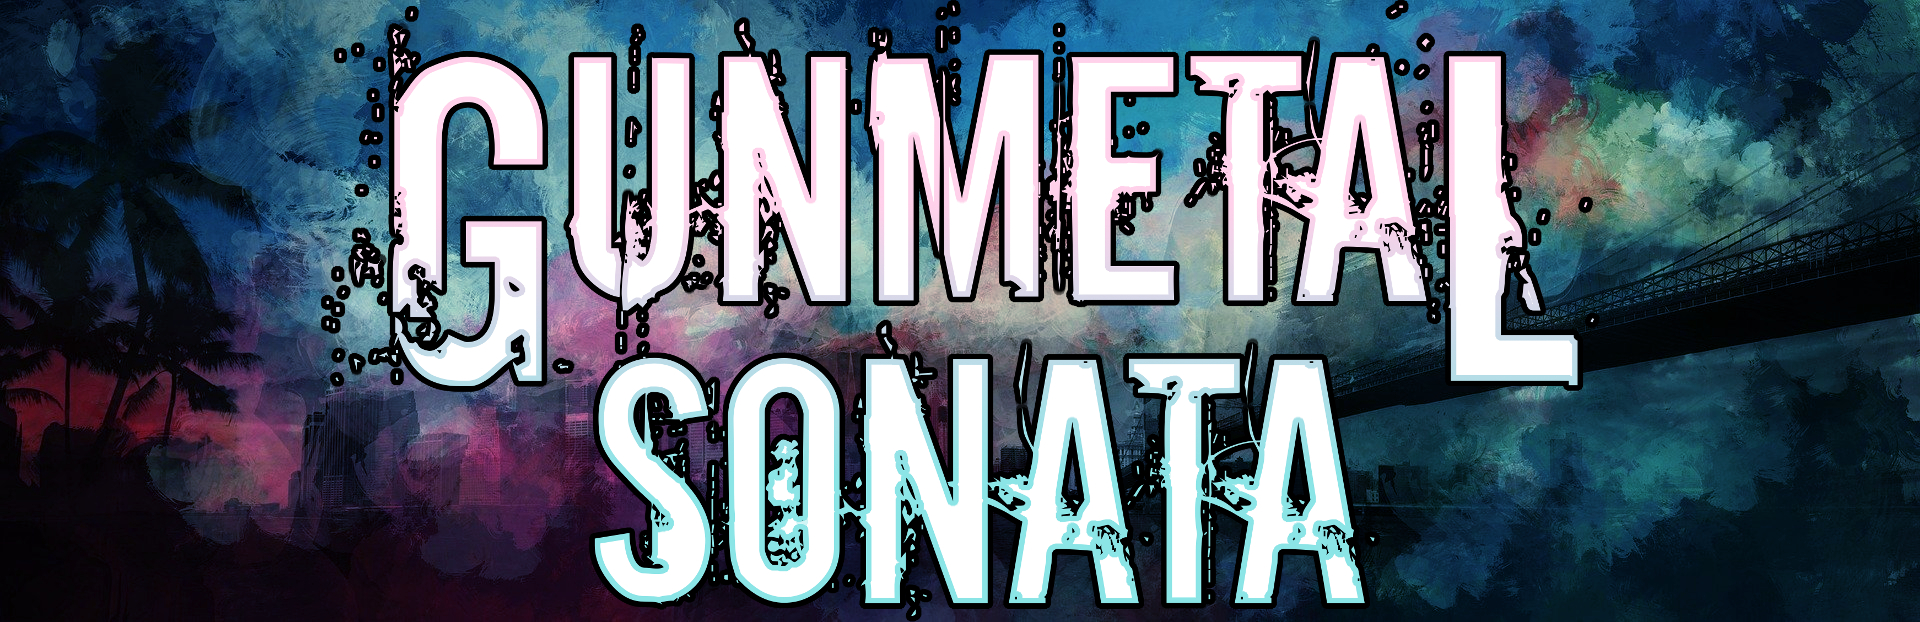 Gunmetal Sonata